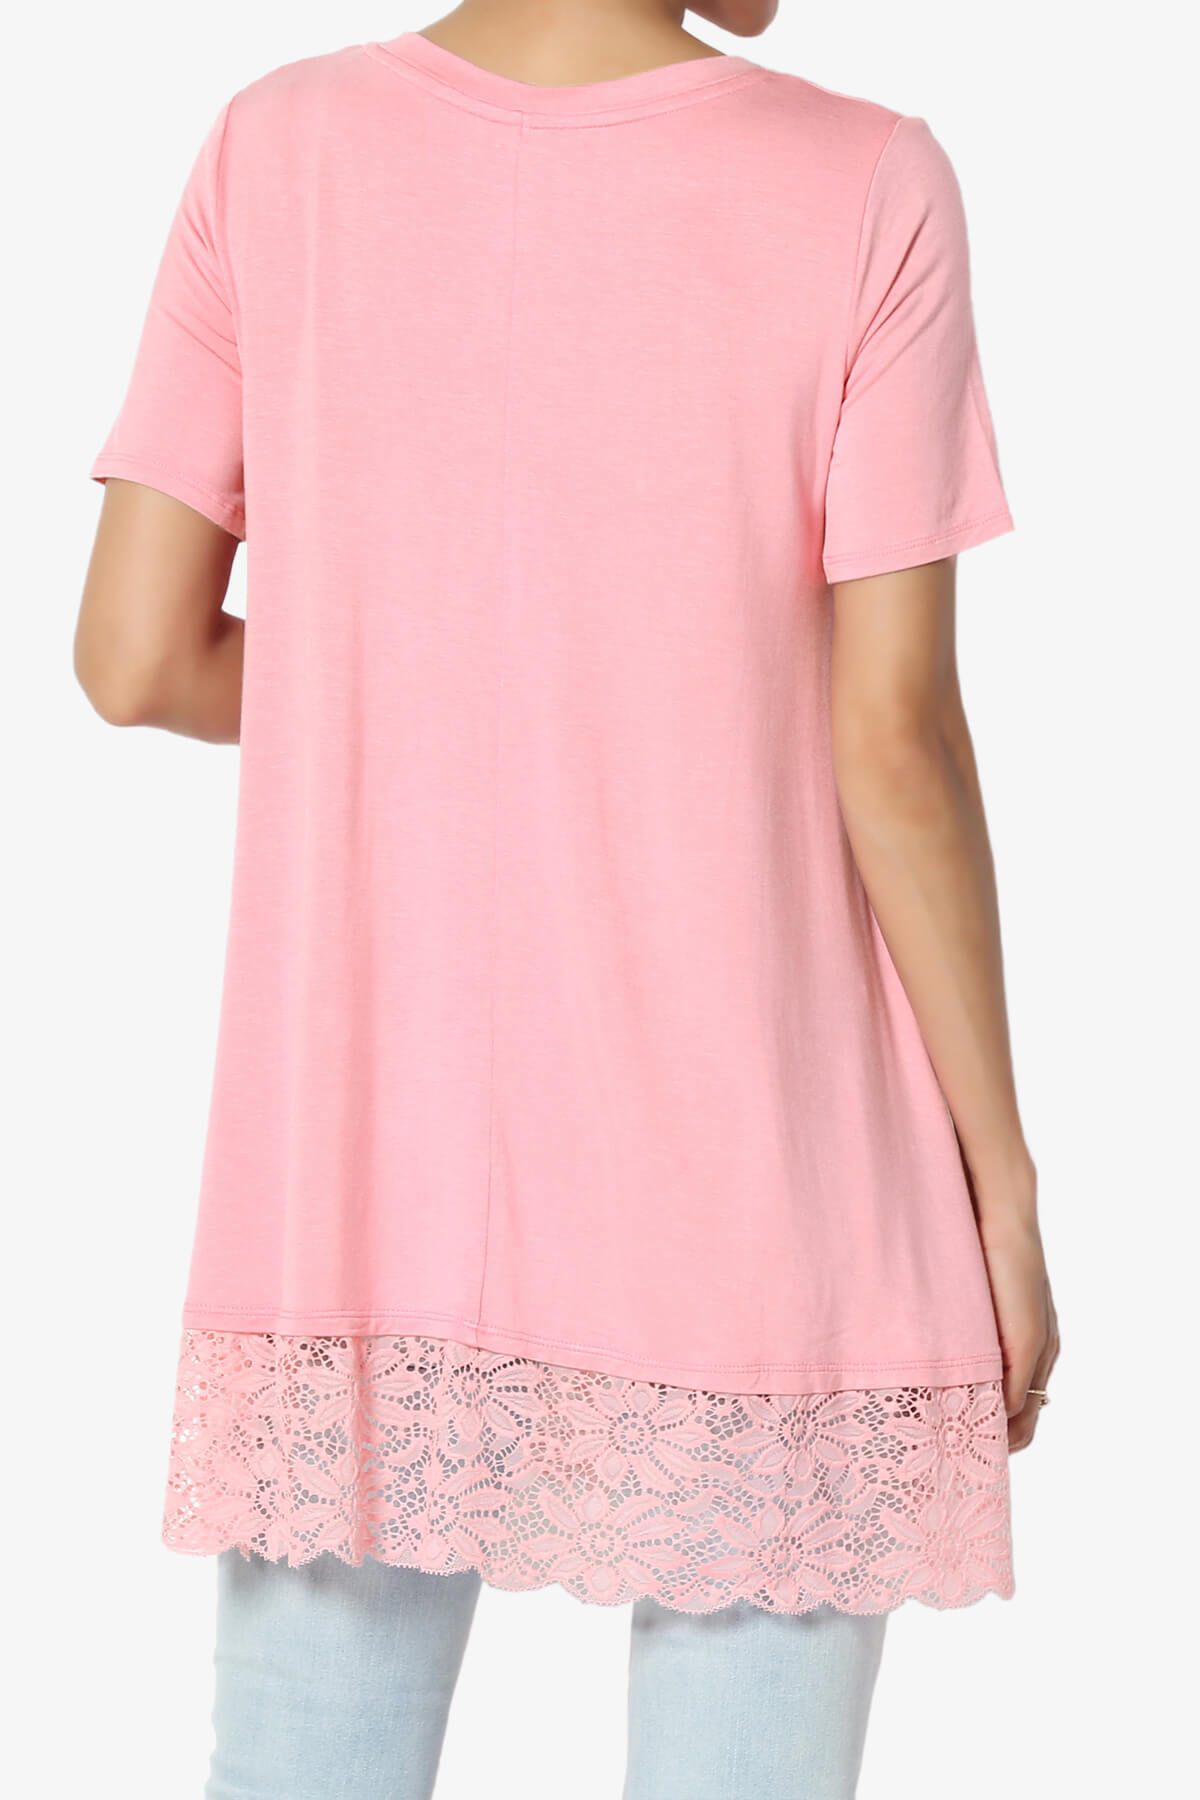 Nason Short Sleeve Lace Hem Tunic ROSE PINK_2